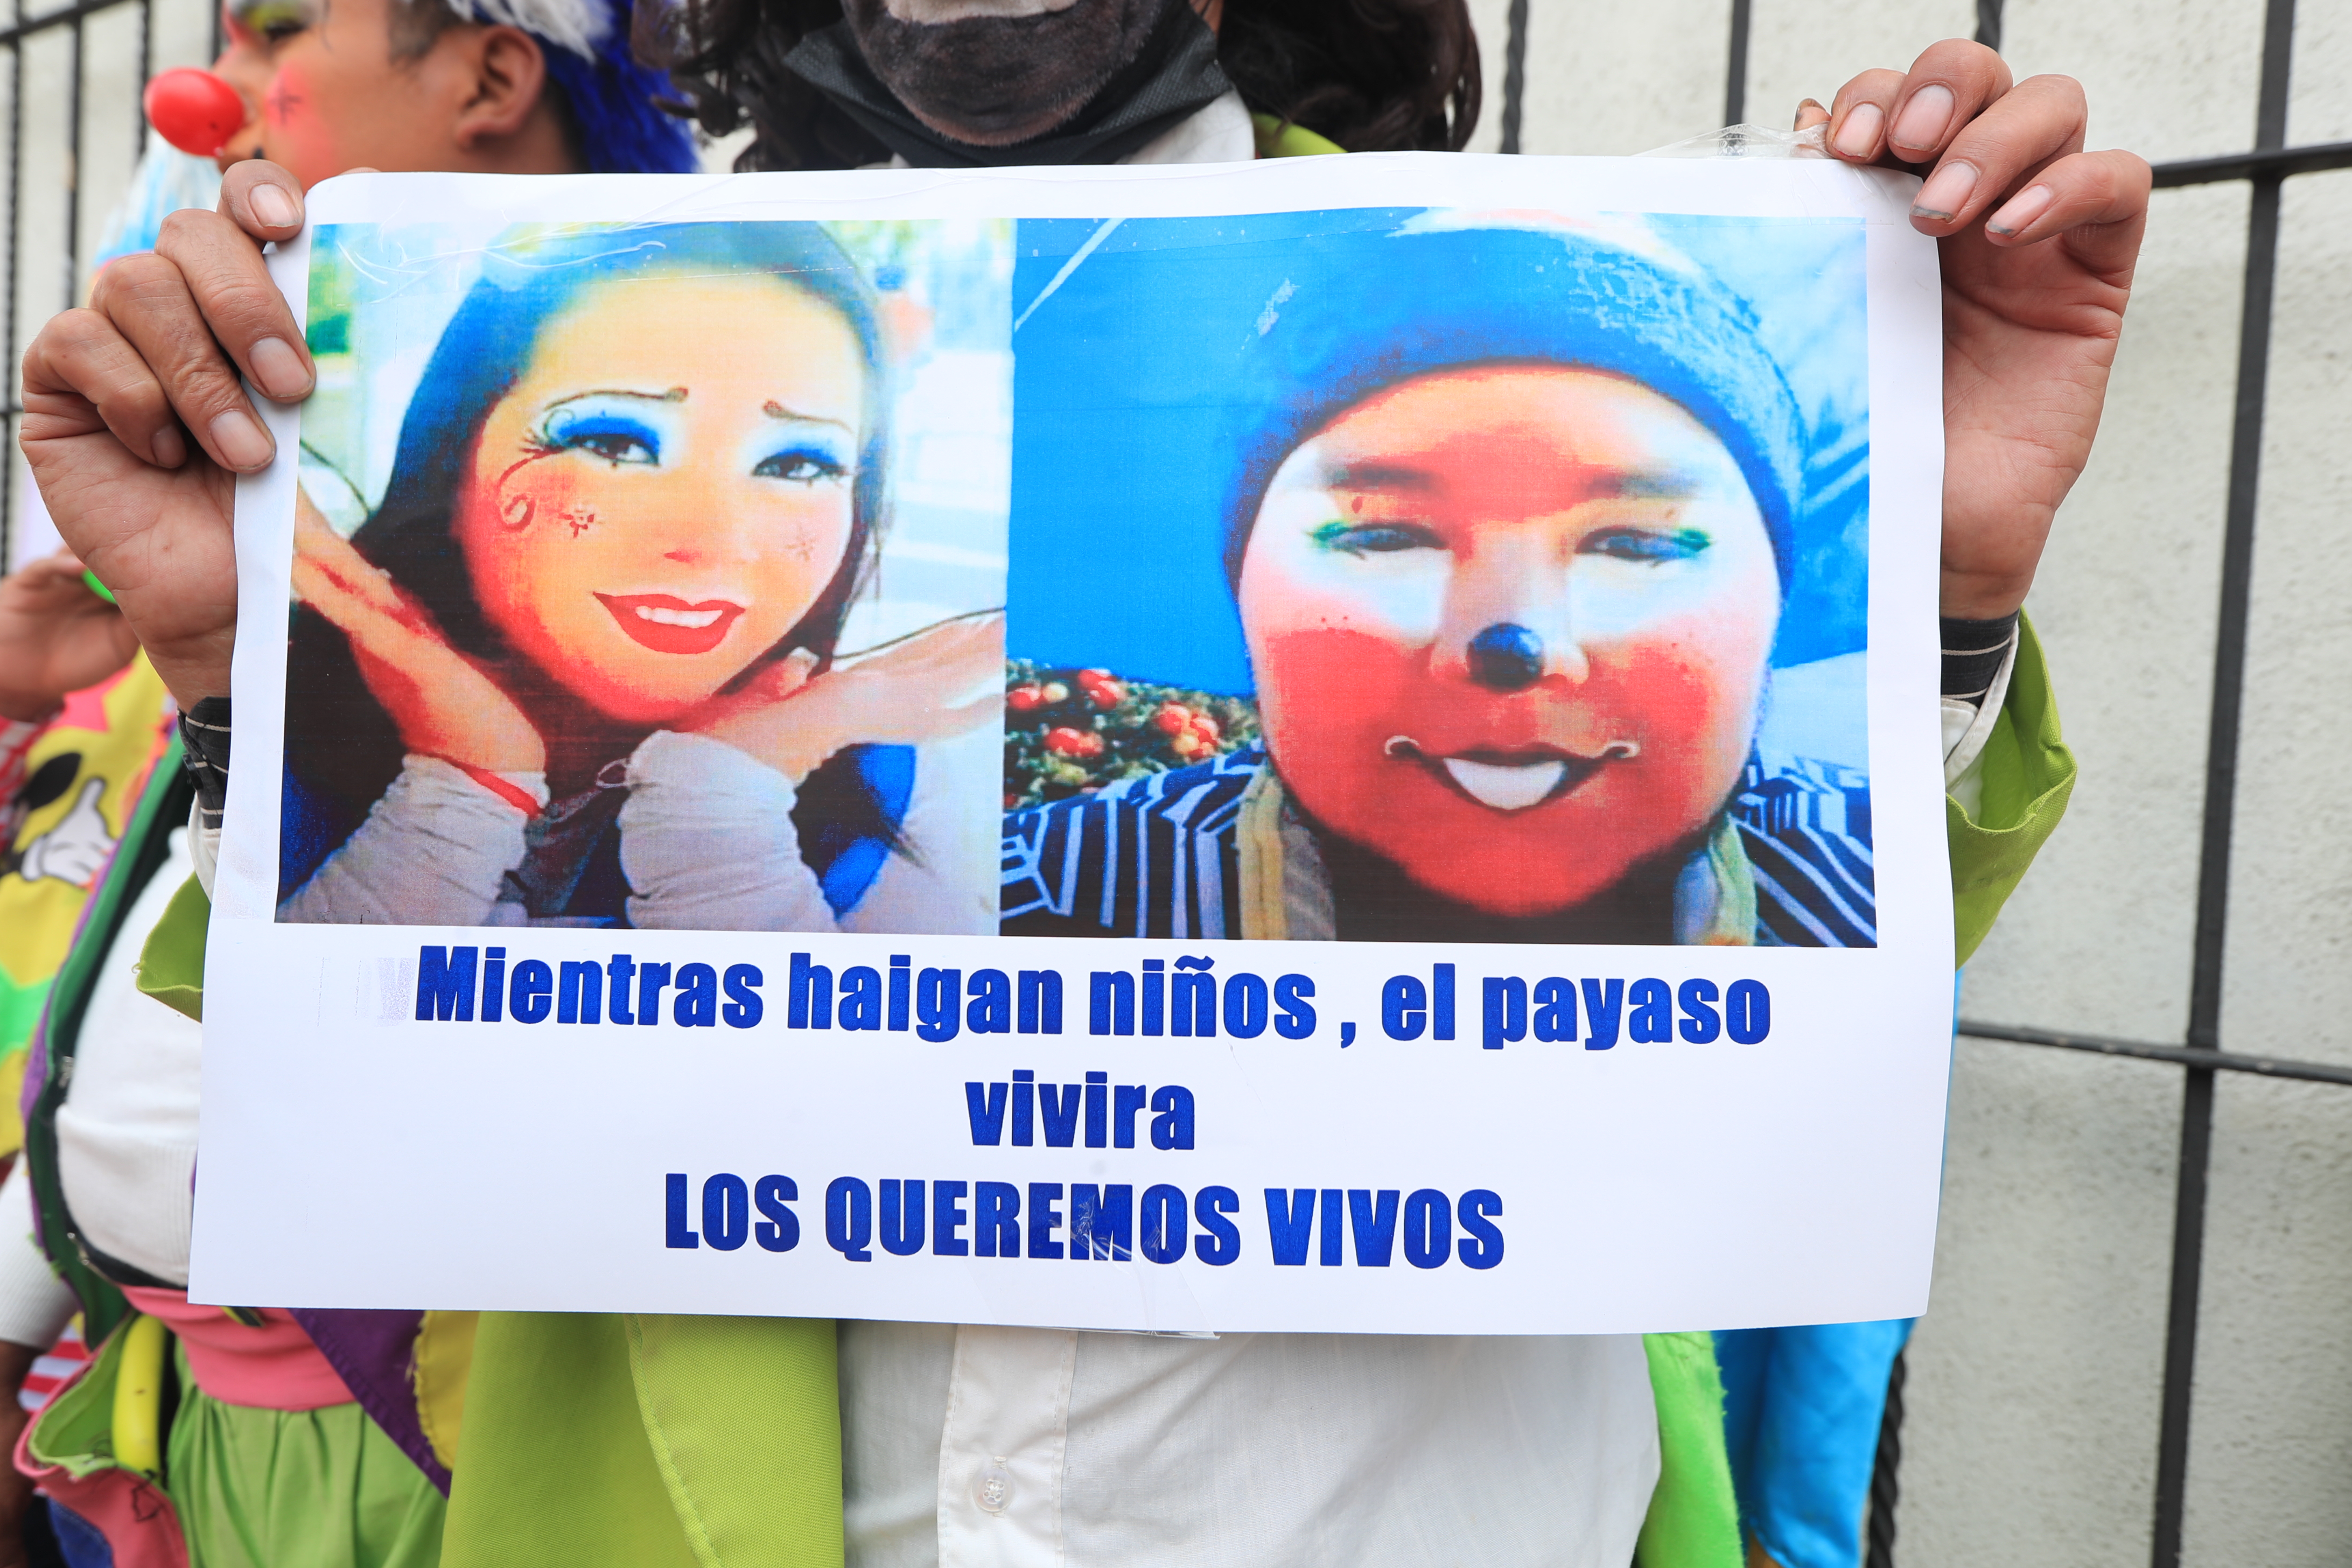 Una pareja de payasos continúa desaparecida desde hace más de tres semanas en Guatemala. (Foto Prensa Libre: Élmer Vargas)